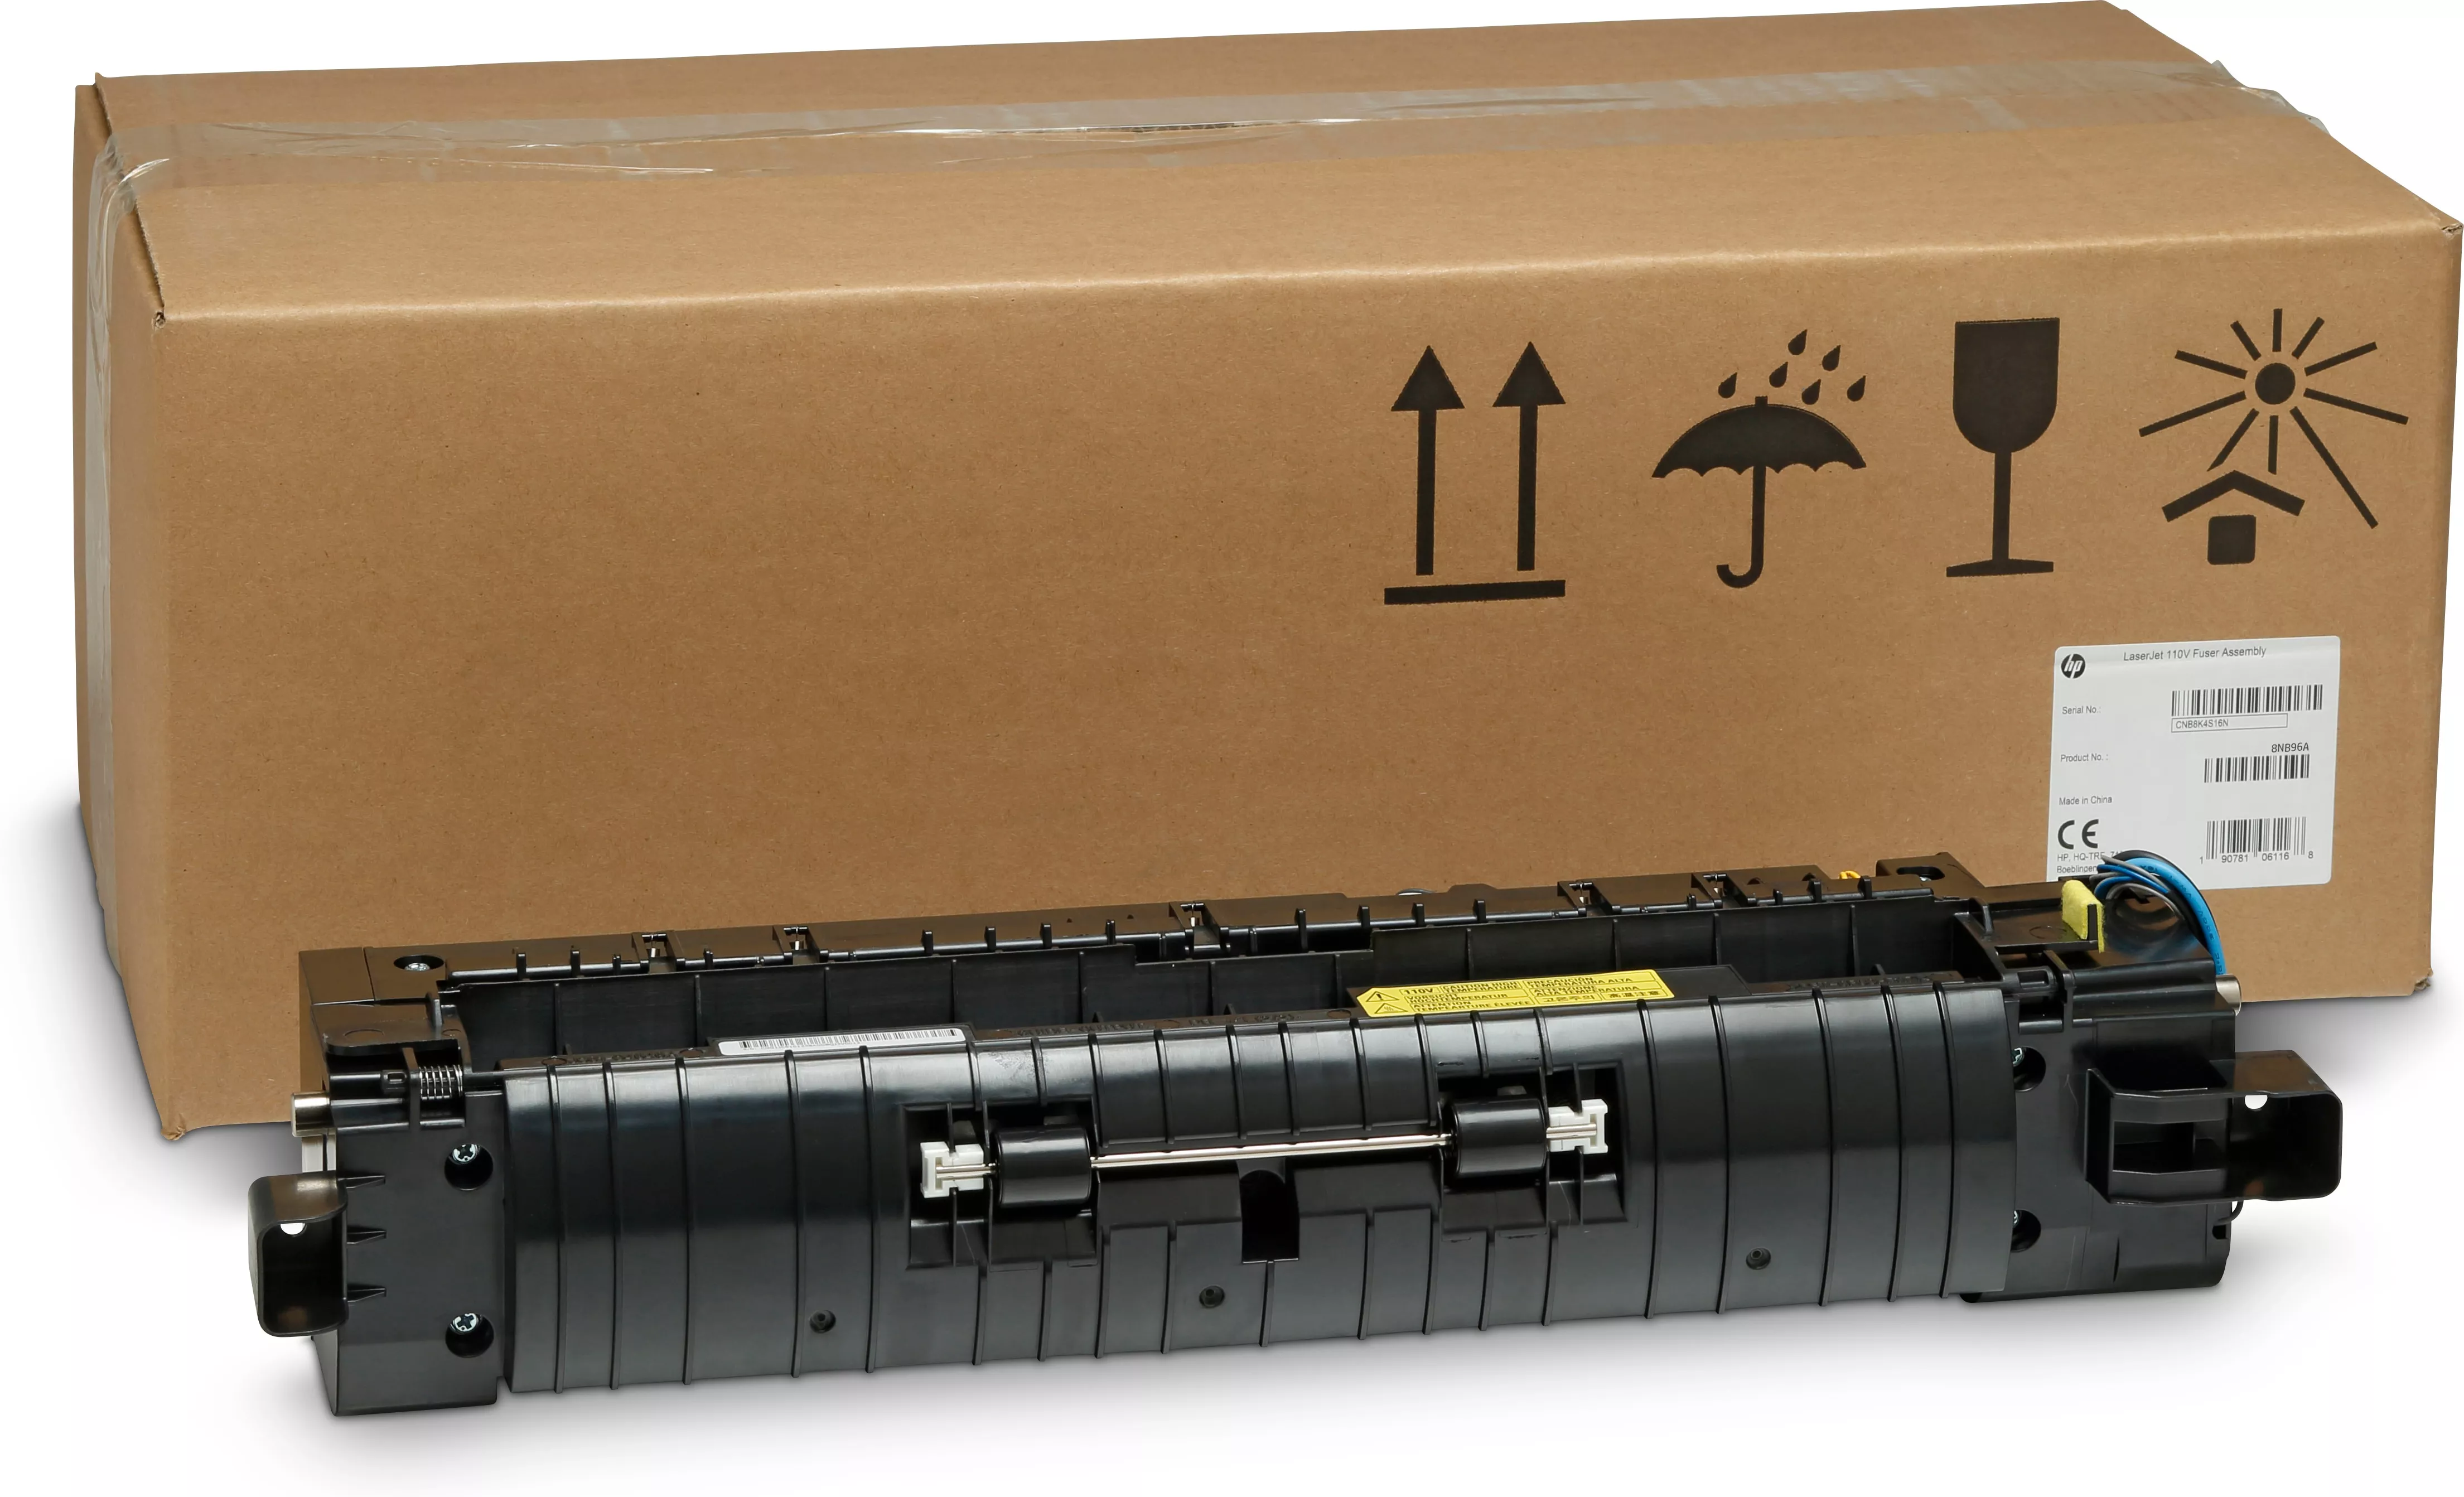 Vente Kit de fusion HP LaserJet (110 V HP au meilleur prix - visuel 4